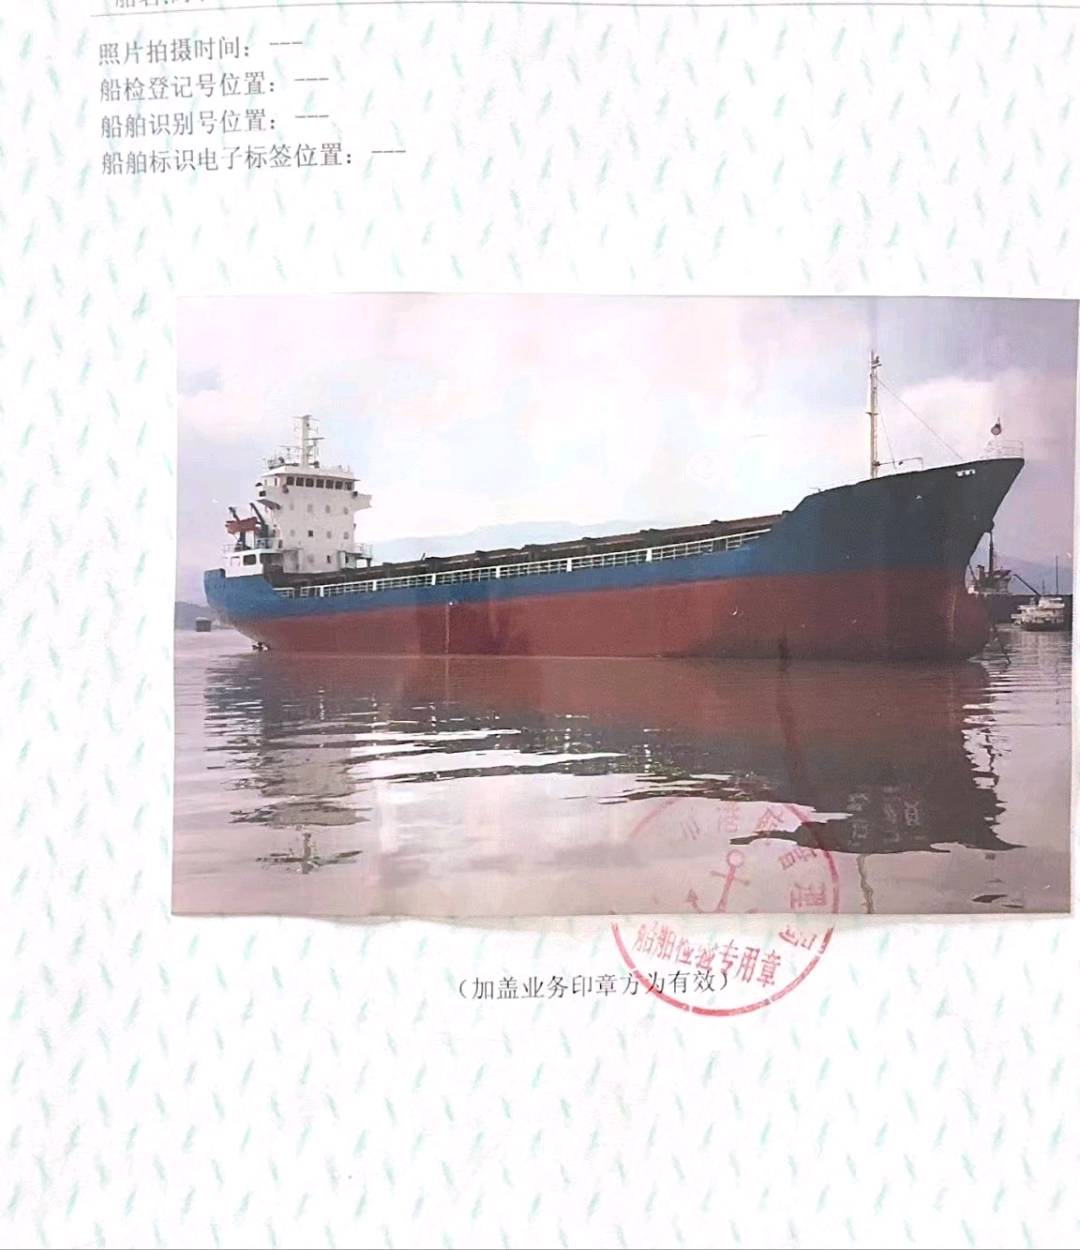 出售:4300吨集装箱船